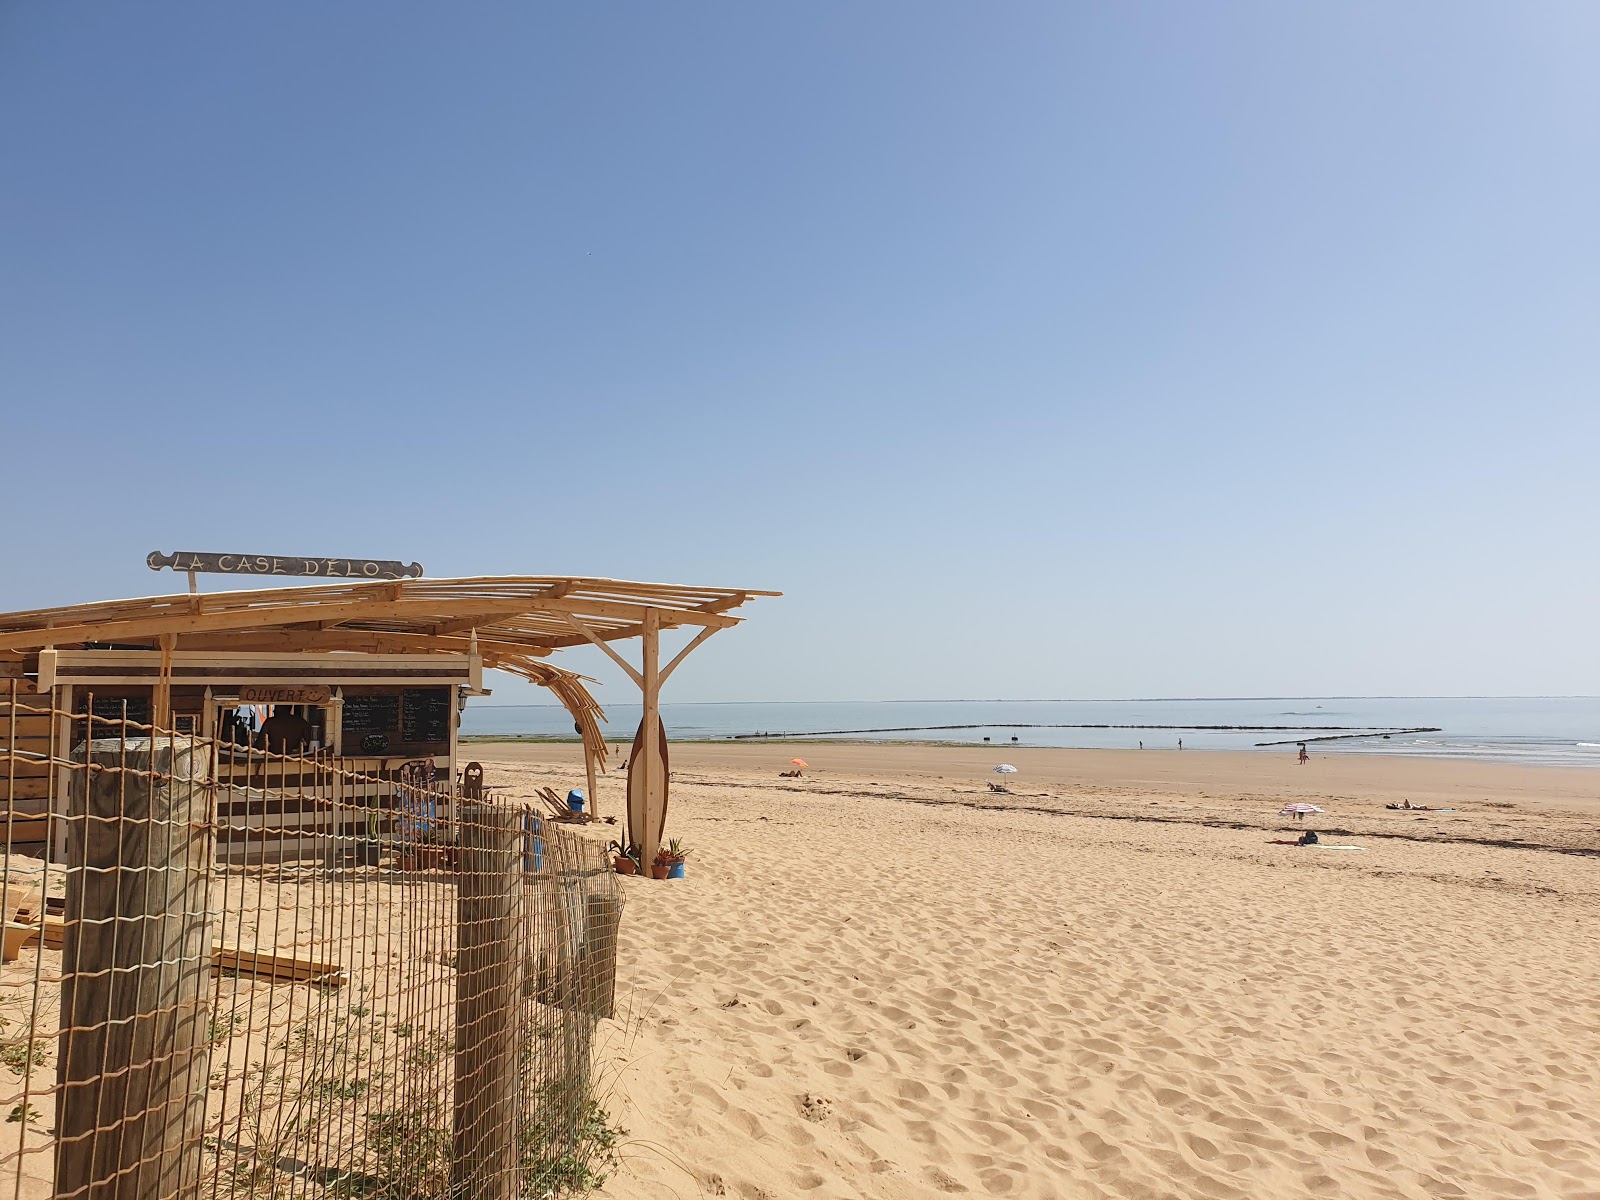 Zdjęcie Corps de Garde beach - popularne miejsce wśród znawców relaksu